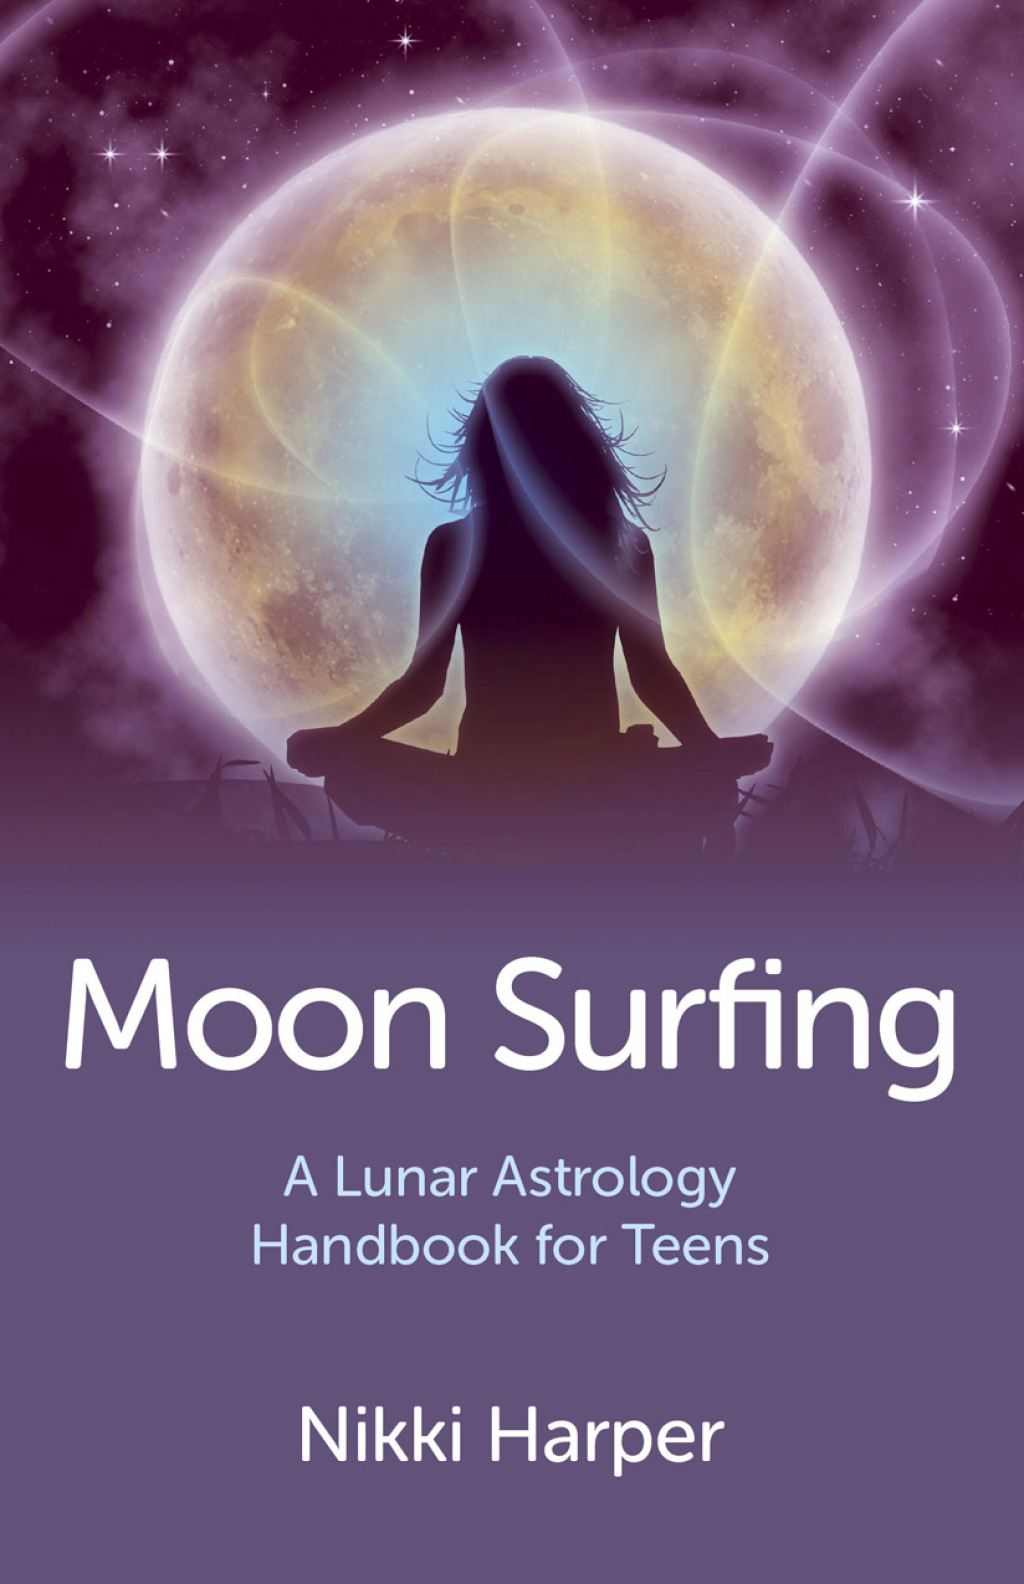 Moon Surfing: A Lunar Astrology Handbook for Teens (eBook) - Nikki Harper